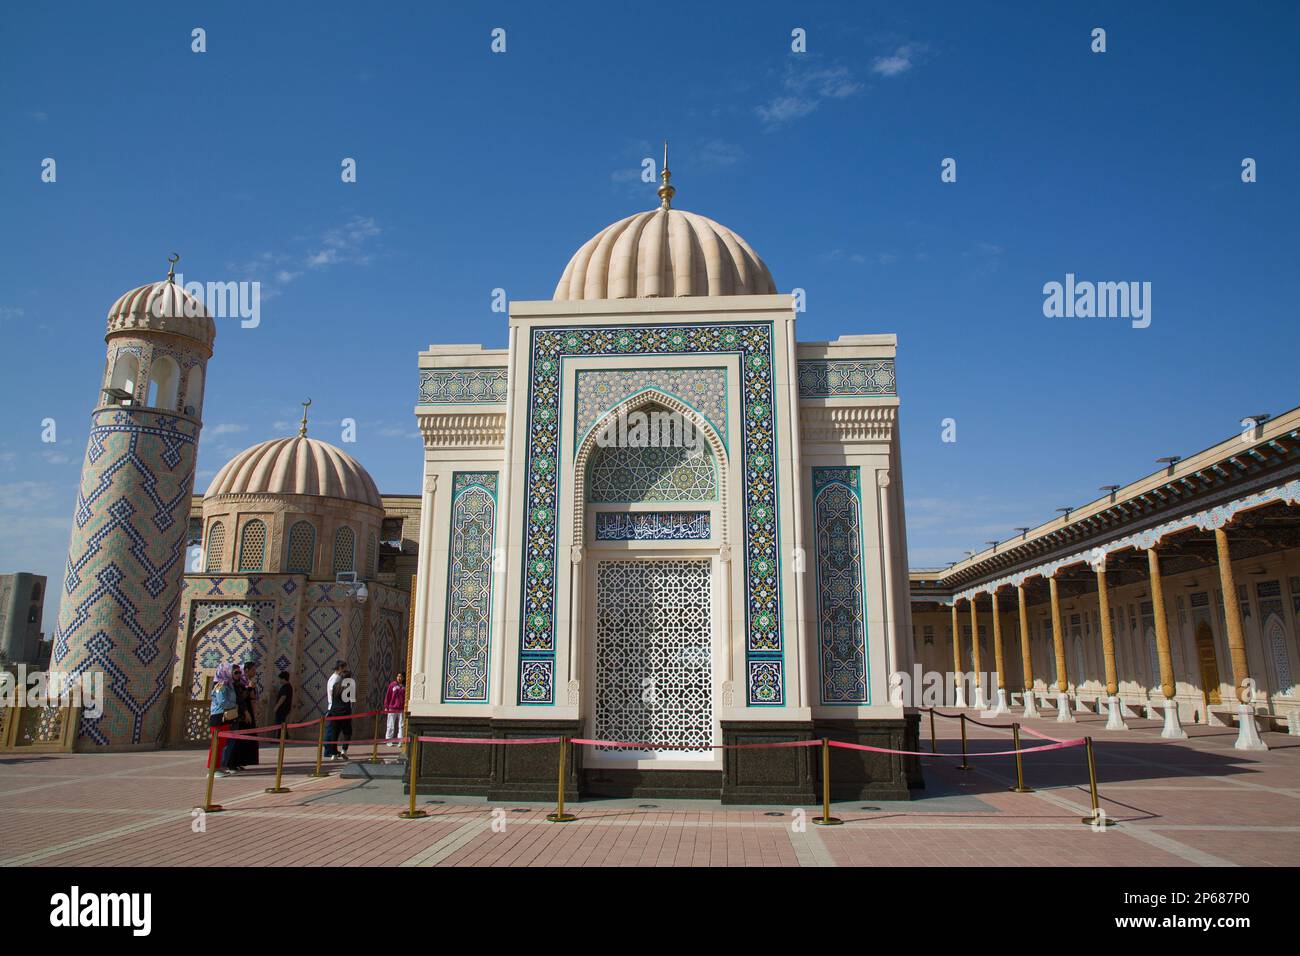 Complejo de la mezquita Hazrat-Khizr, originalmente construido siglo 8th, Patrimonio de la Humanidad de la UNESCO, Samarcanda, Uzbekistán, Asia Central, Asia Foto de stock